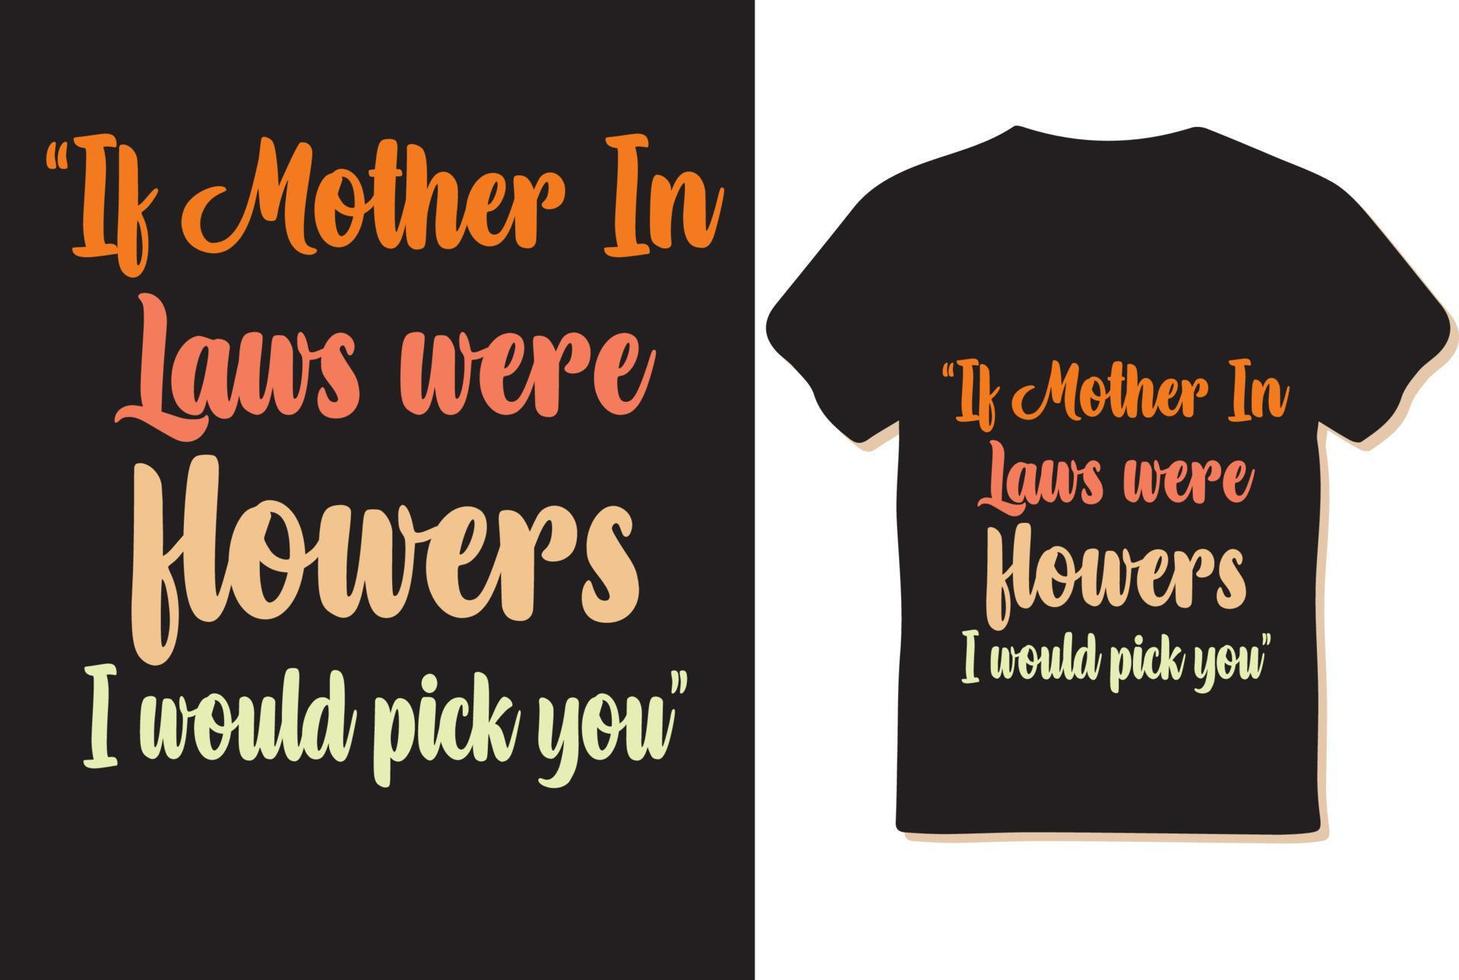 design della maglietta per la festa della mamma, vettore di design della maglietta, illustrazione, eps.